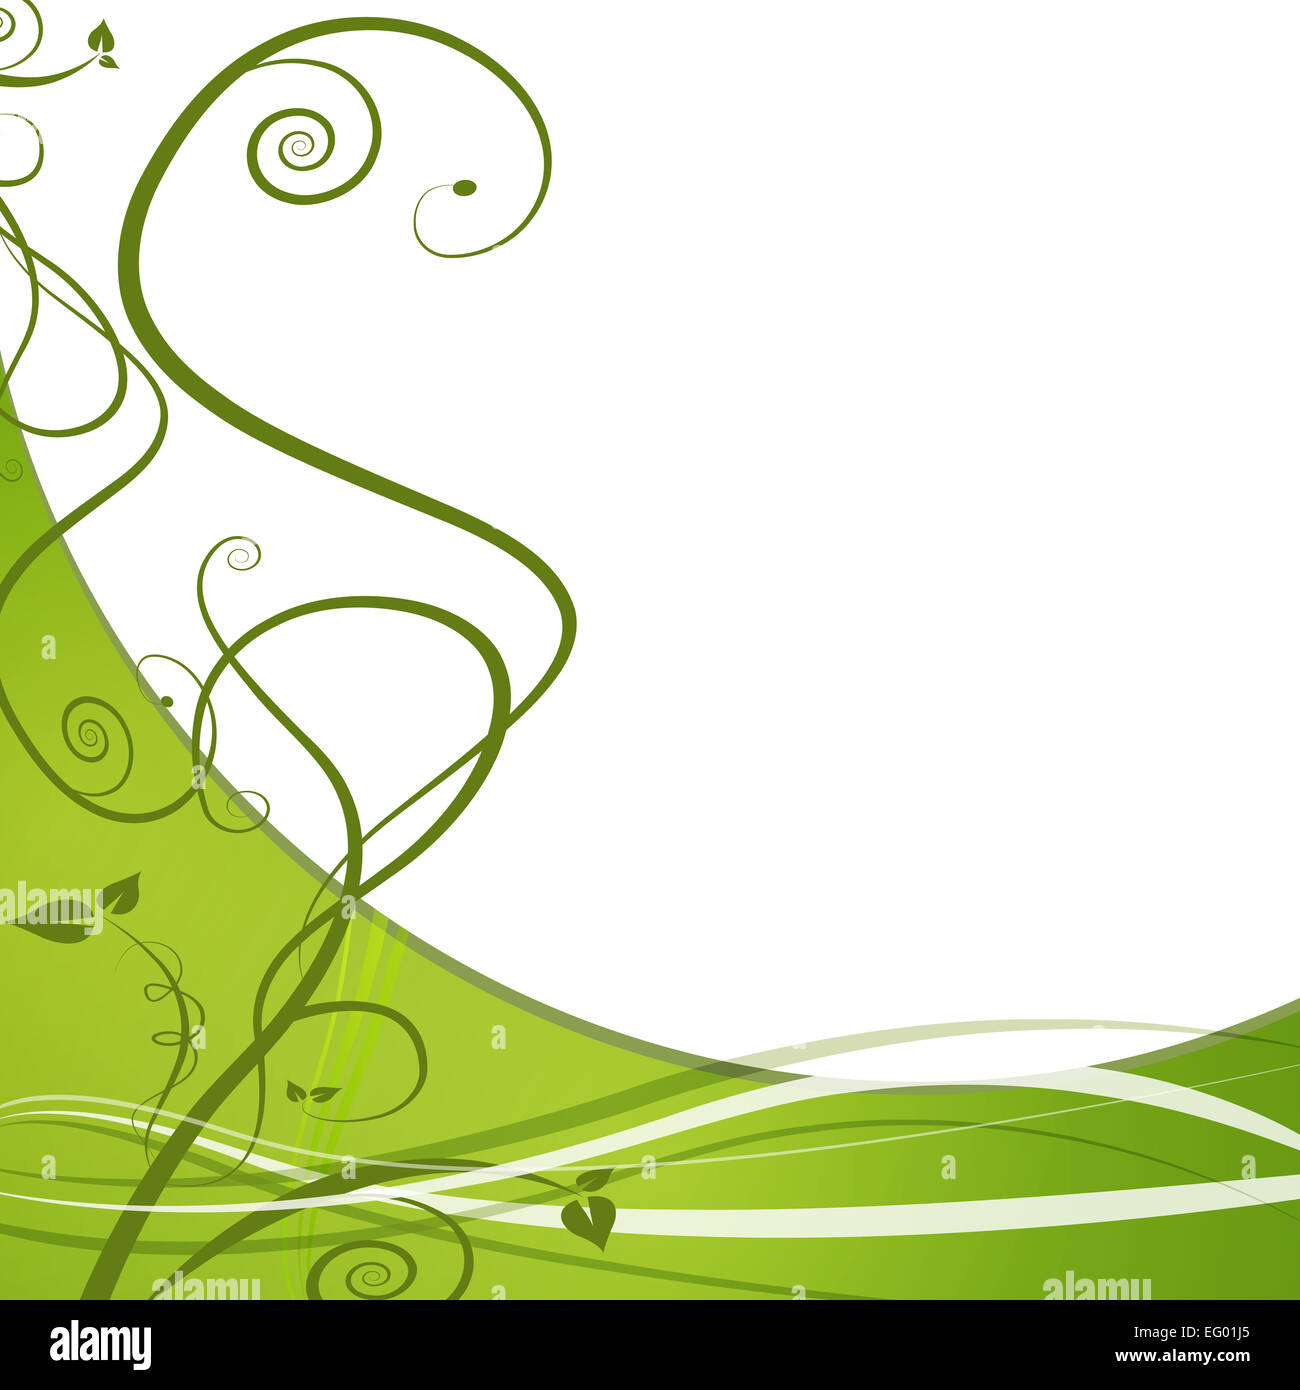 Ein Bild von einem grünen Weinstock Blatt abstrakten Hintergrund. Stockfoto